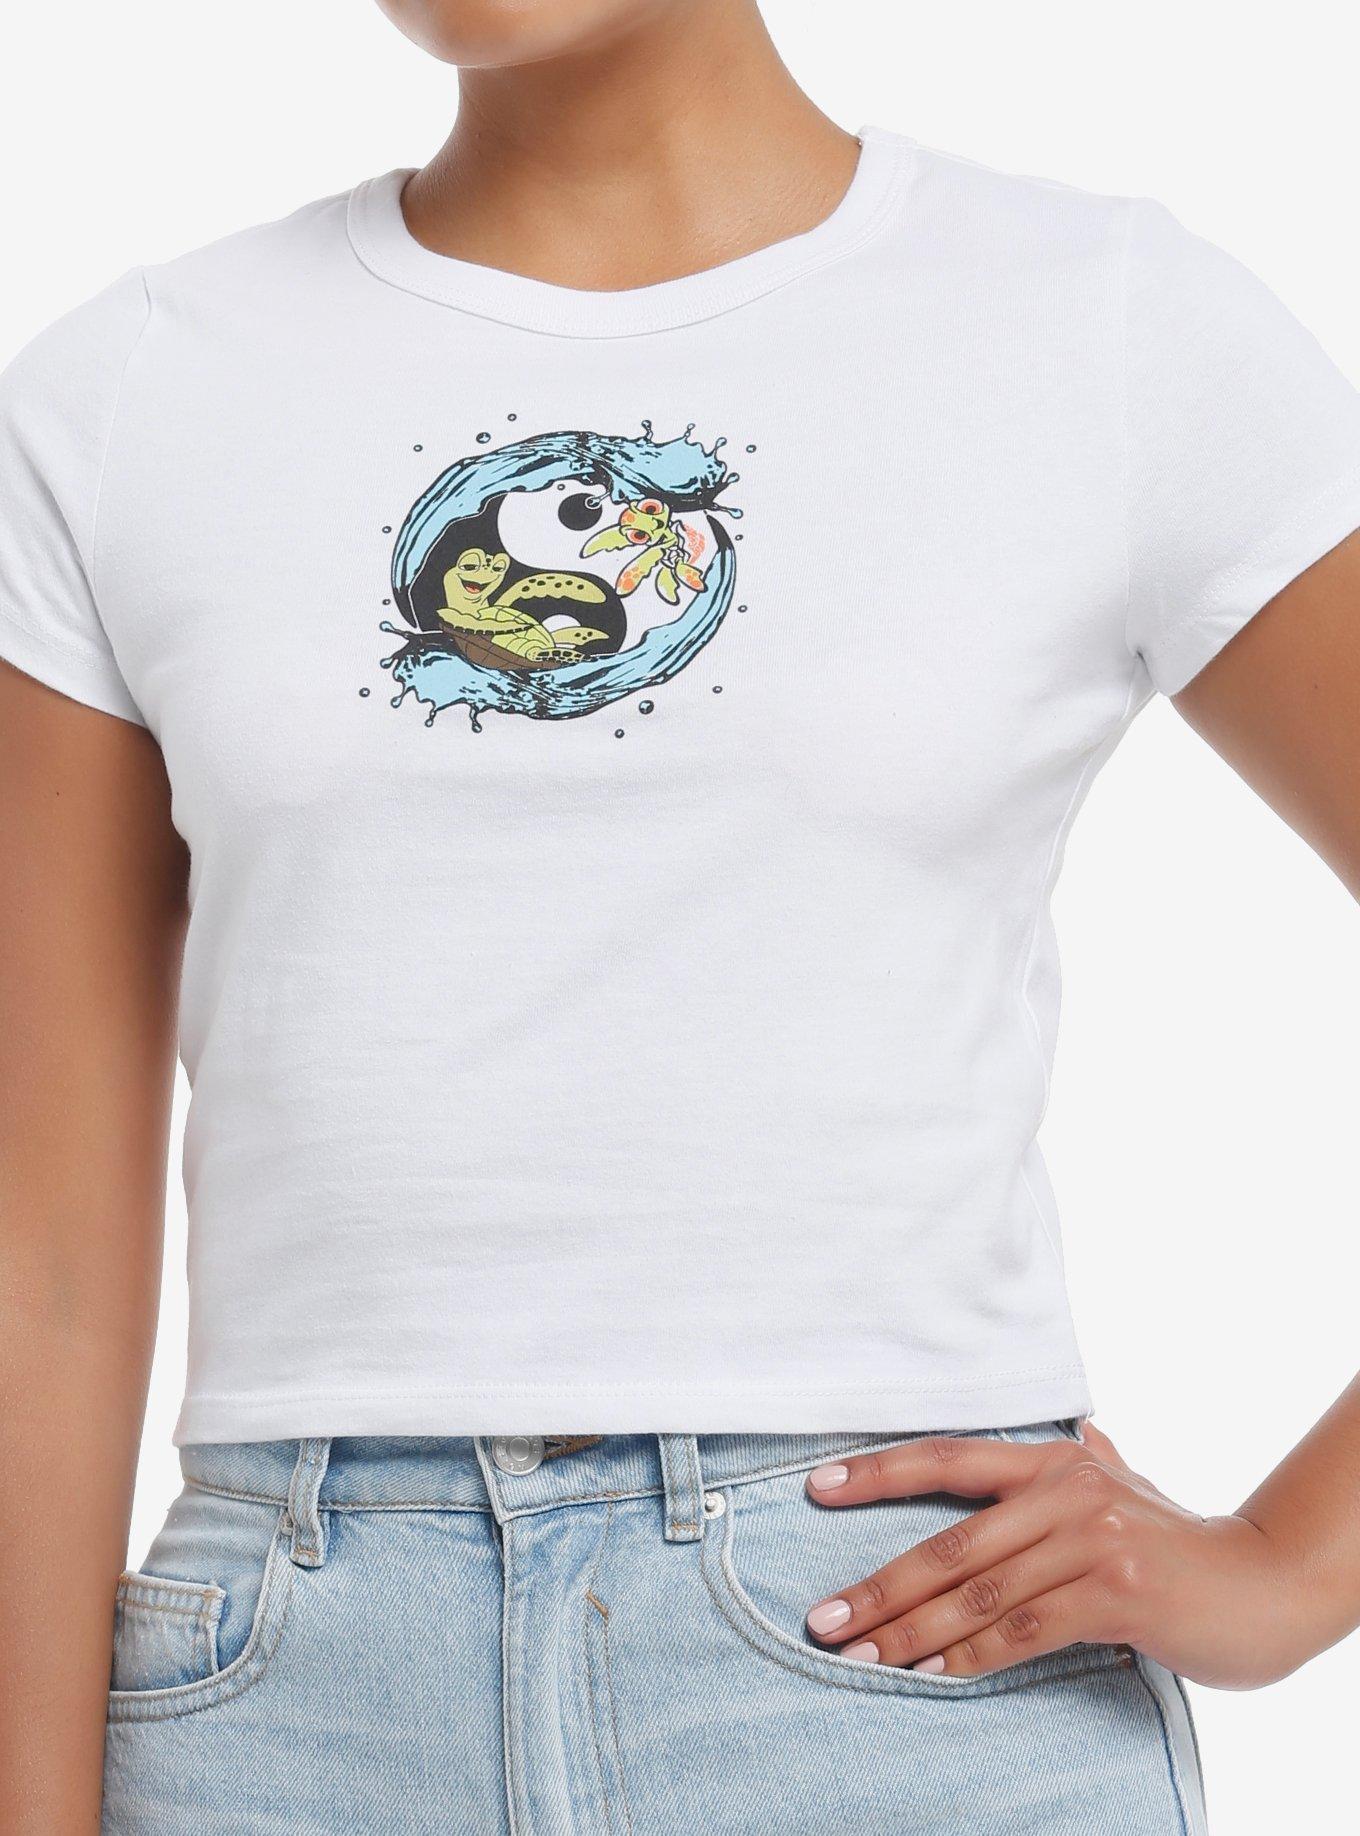 Disney Pixar Finding Nemo Turtles Girls Baby T-Shirt, , hi-res